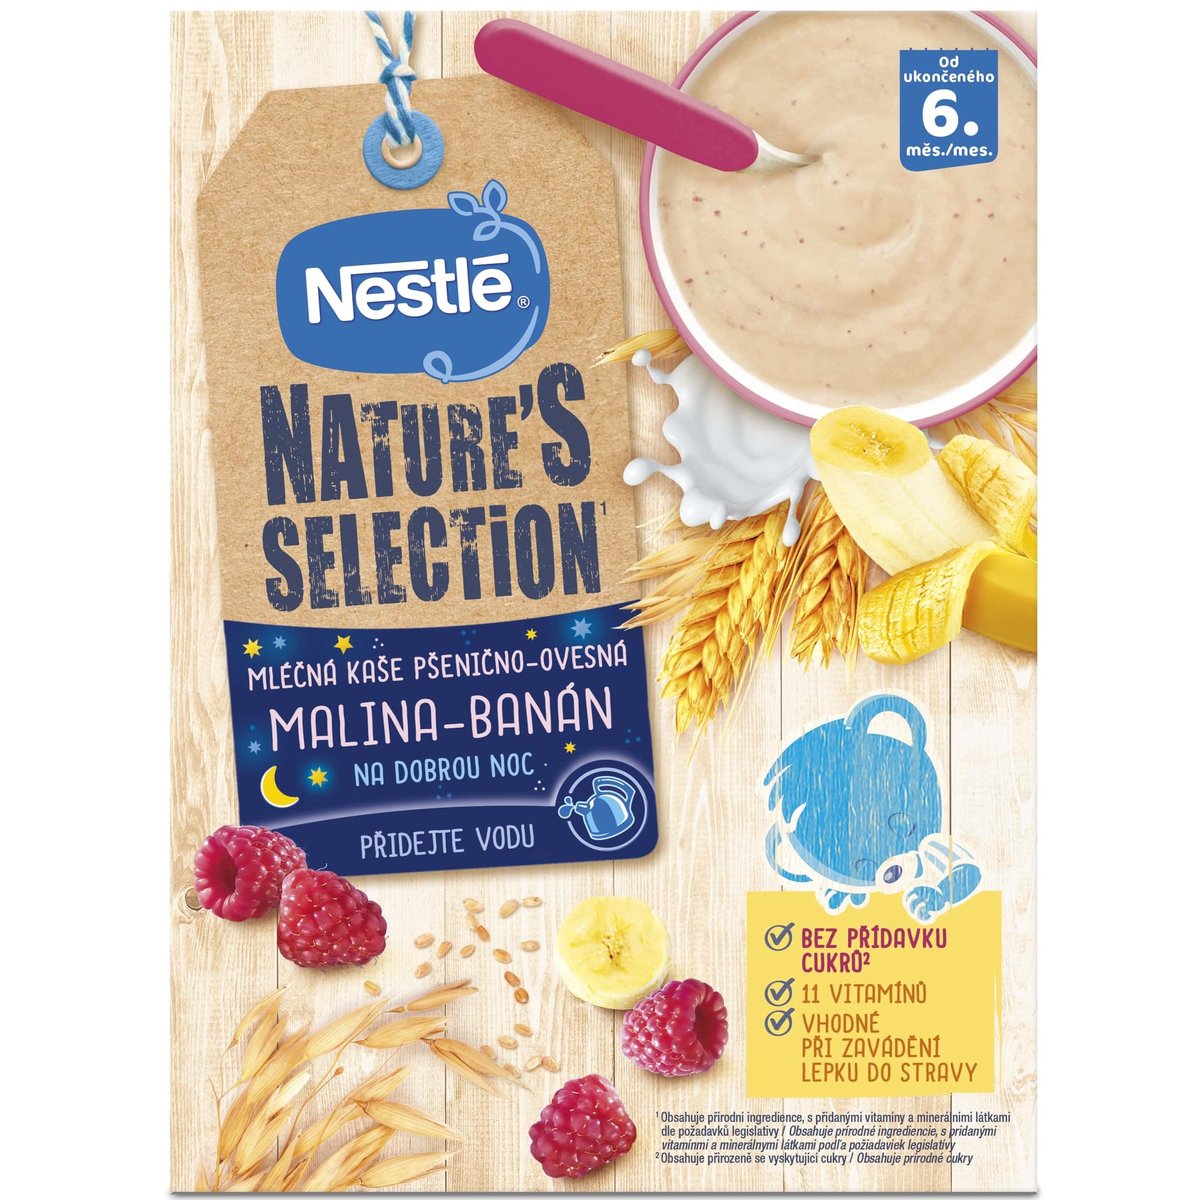 Nestlé Nature's Selection Mléčná kaše pšenično-ovesná malina a banán